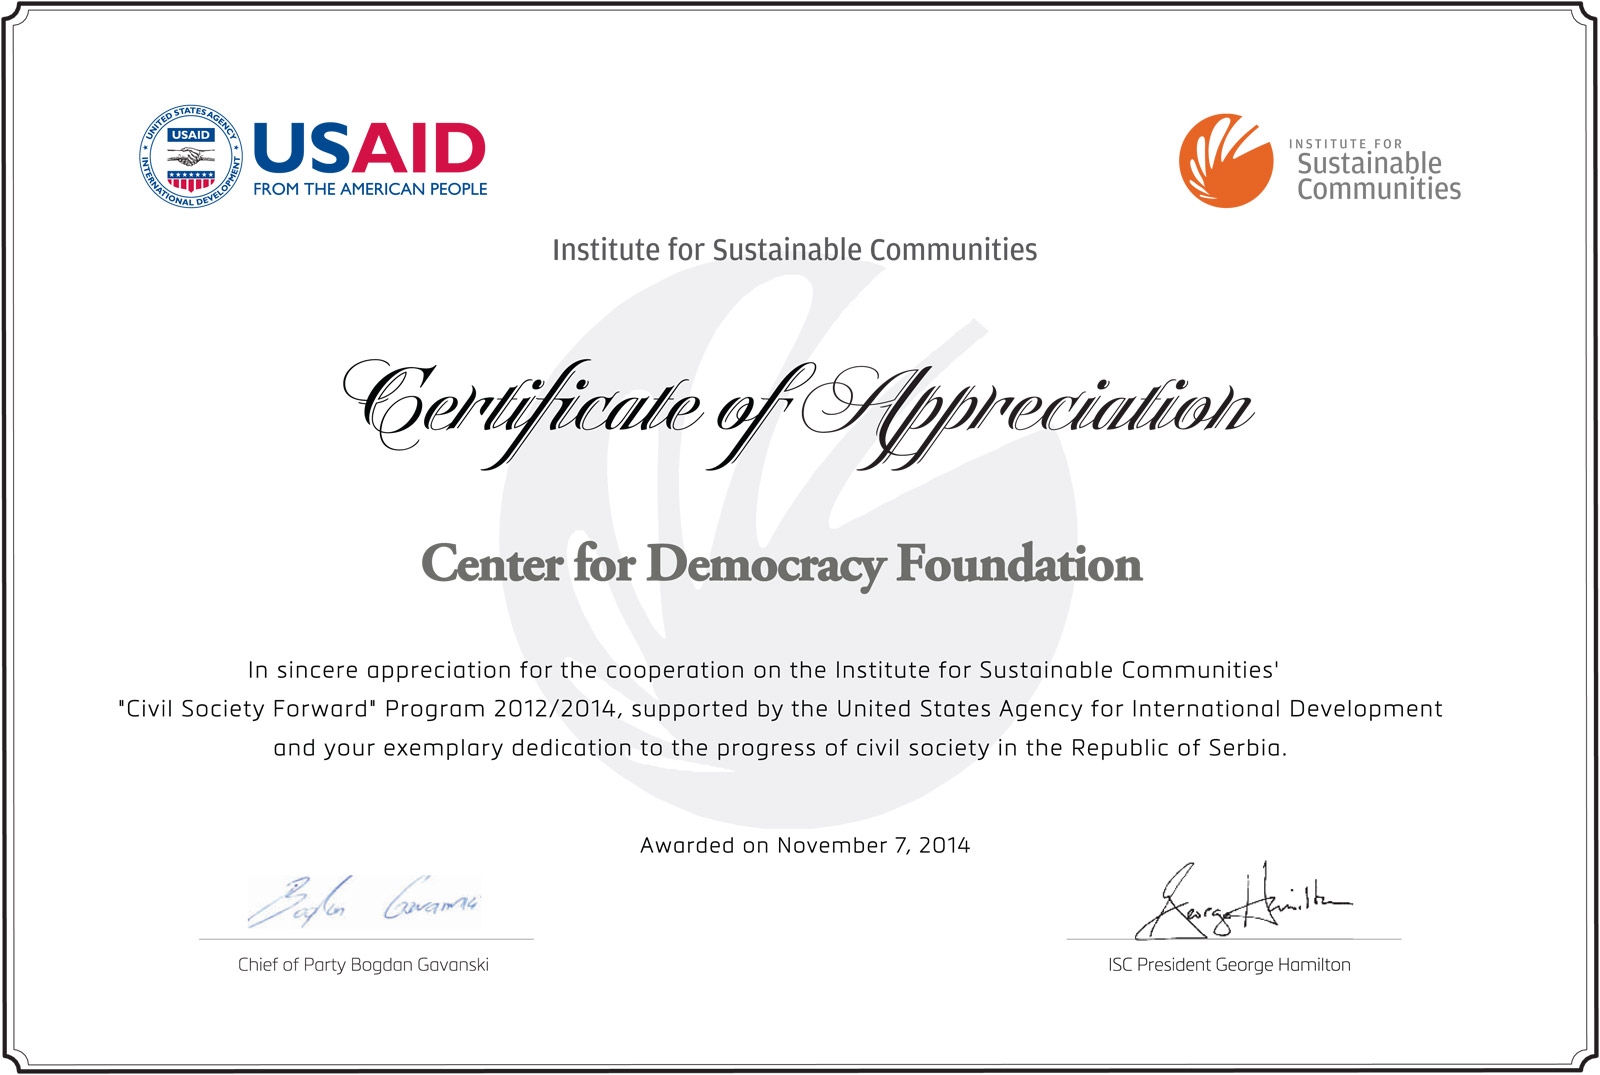 Fondacija Centar za demokratiju dobila priznanje za uspešnu realizaciju projekta Efikasnija uloga građana i civilnog društva u nadzoru i zaštiti radnih prava